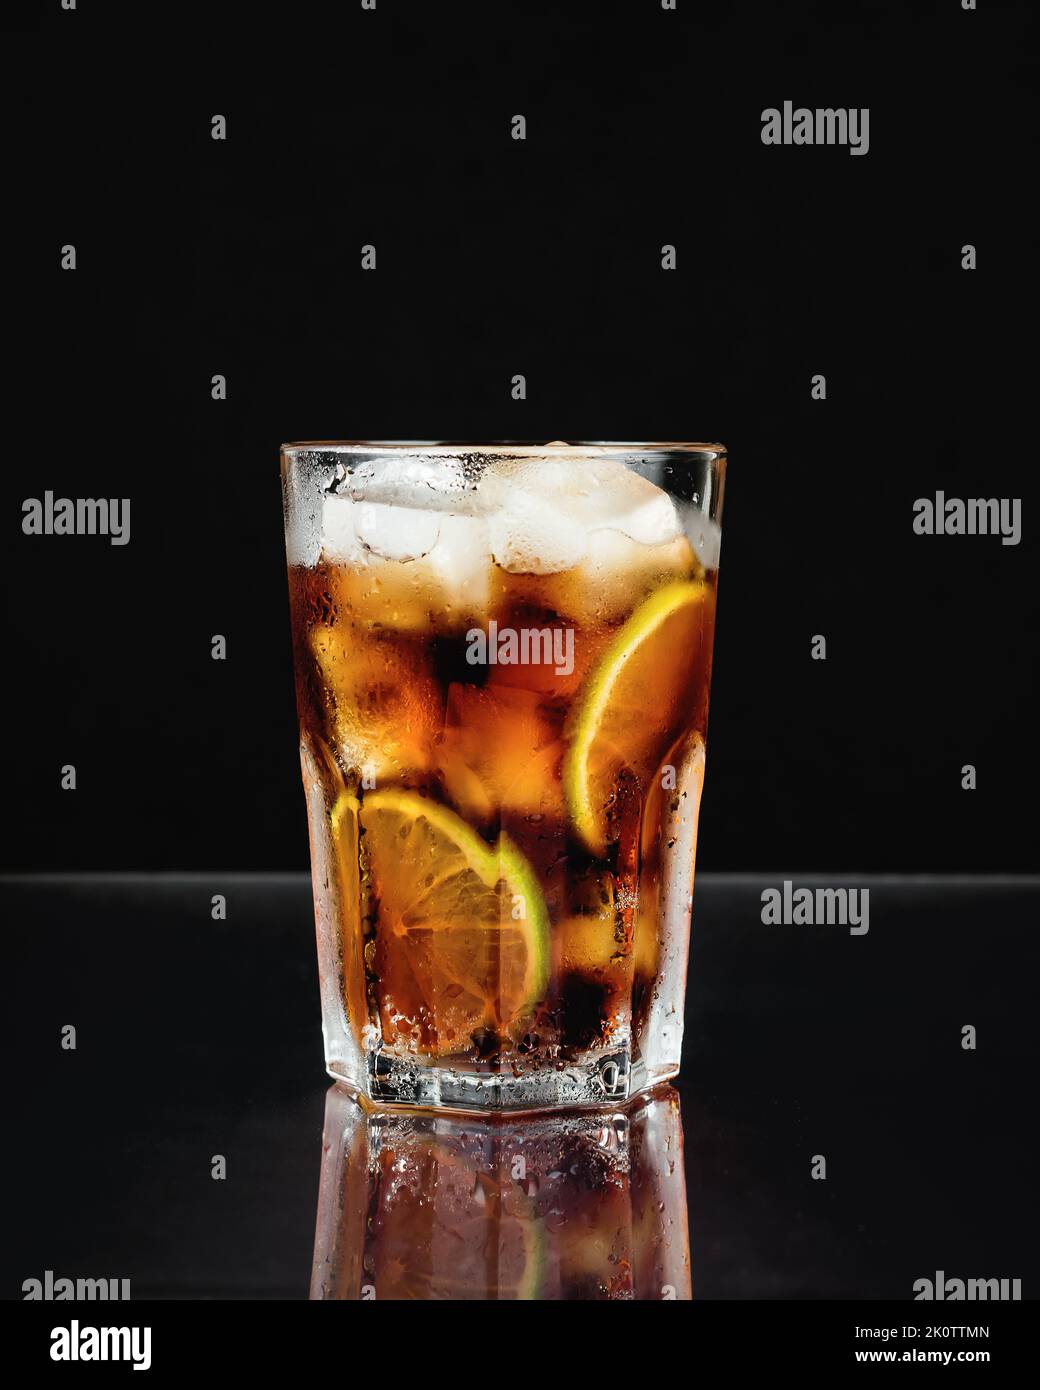 Cuba Libre Cocktail mit Limette auf schwarzem Hintergrund. Stockfoto